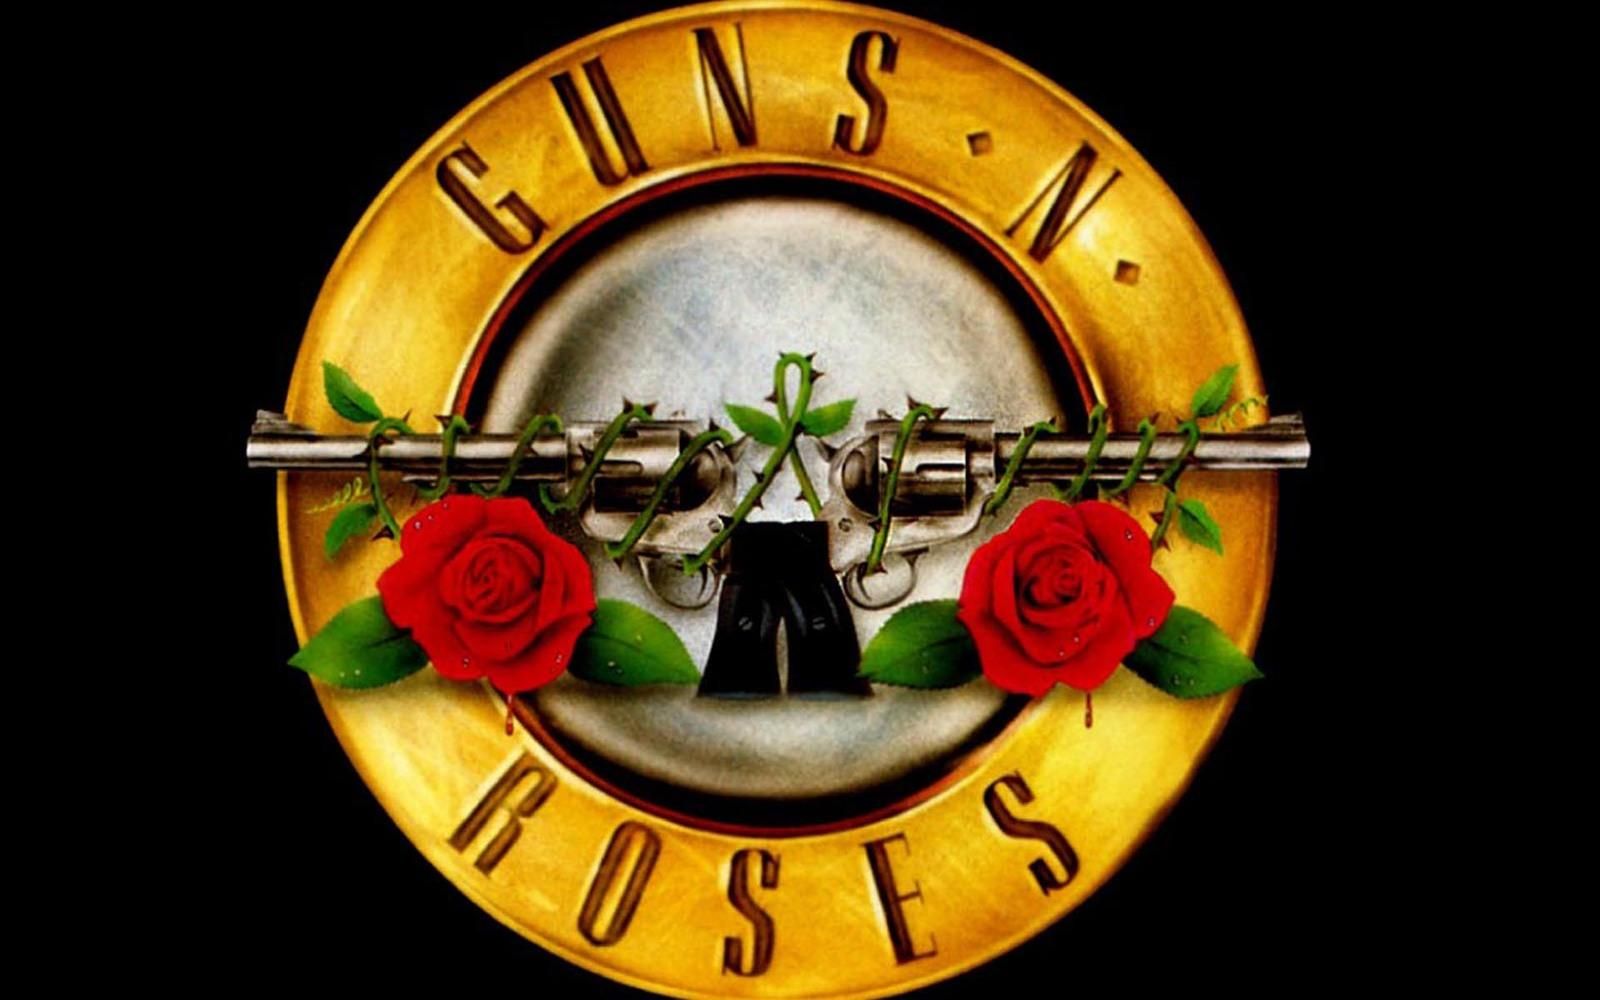 Кліп гурту Guns N' Roses набрав рекордний мільярд переглядів на YouTube